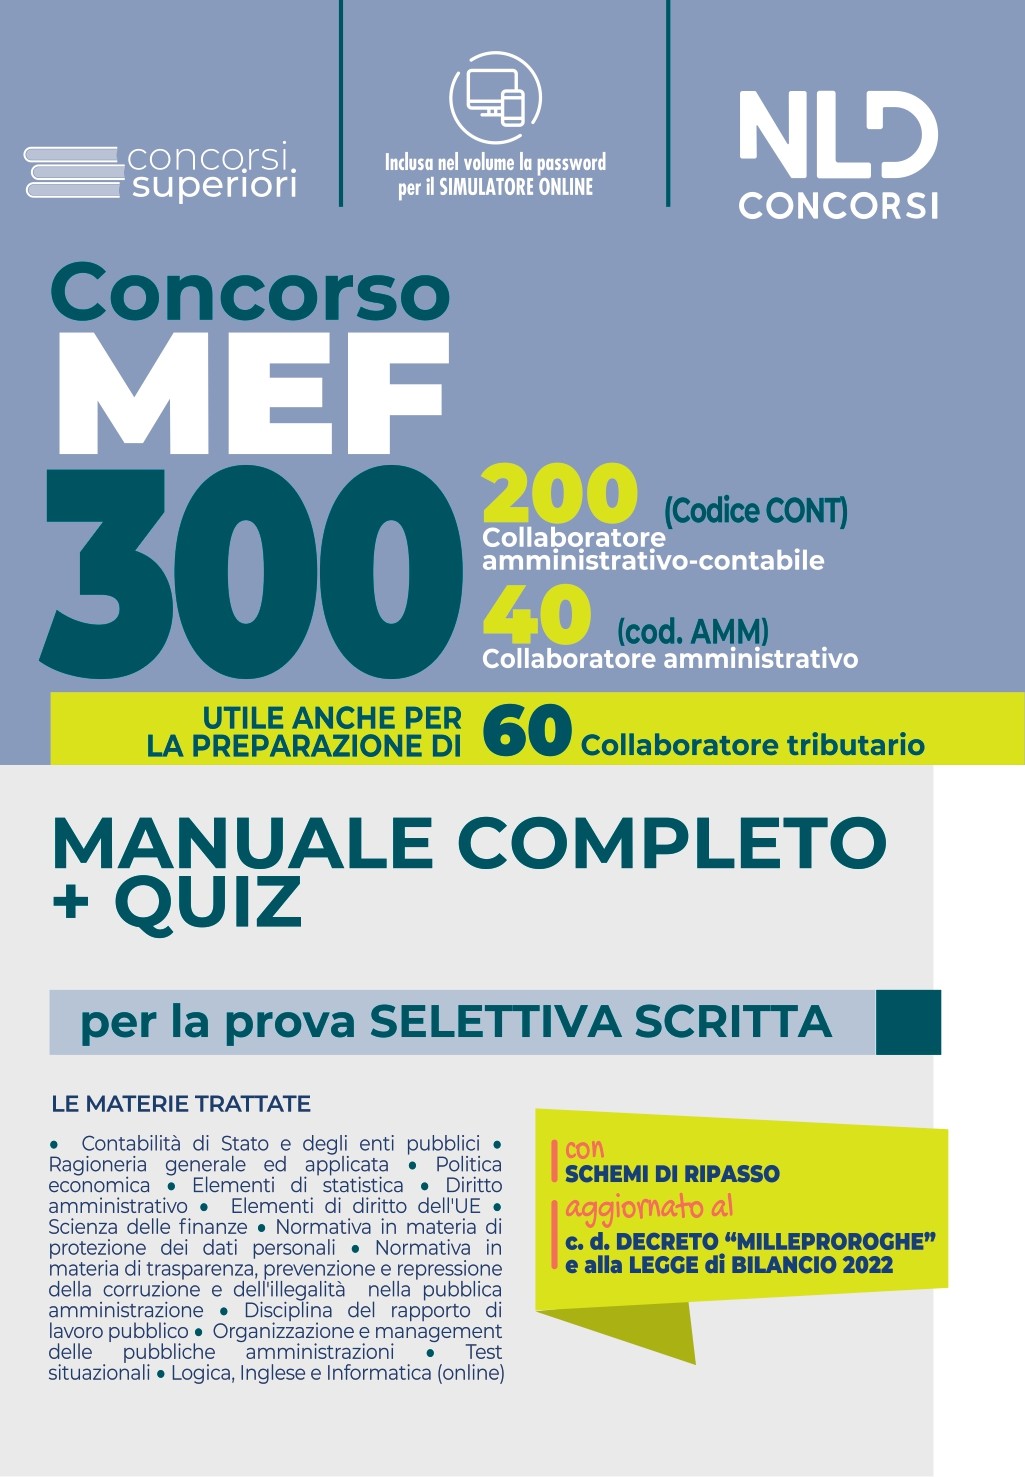 Concorso 300 MEF: MANUALE COMPLETO + QUIZ per la prova preselettiva scritta  CONCORSO 300 POSTI MEF (200 Collaboratori Amministrativi Contabili +  60 Collaboratori Tributari + 40 Collaboratori Amministrativi